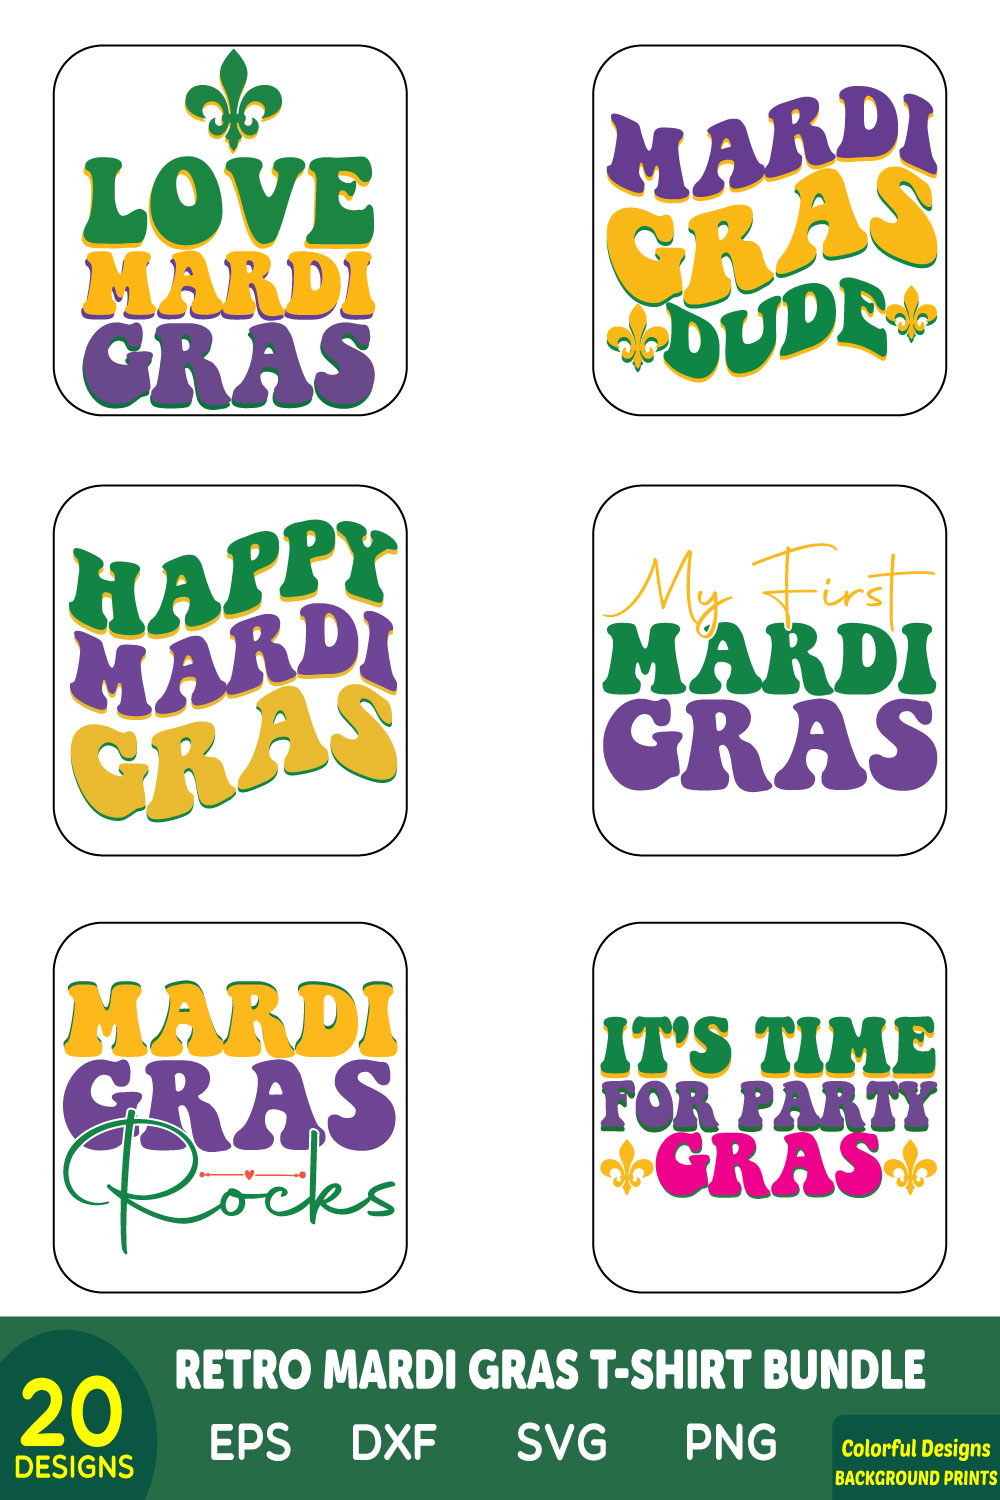 Retro Mardi Gras T-shirt Bundle pinterest preview image.